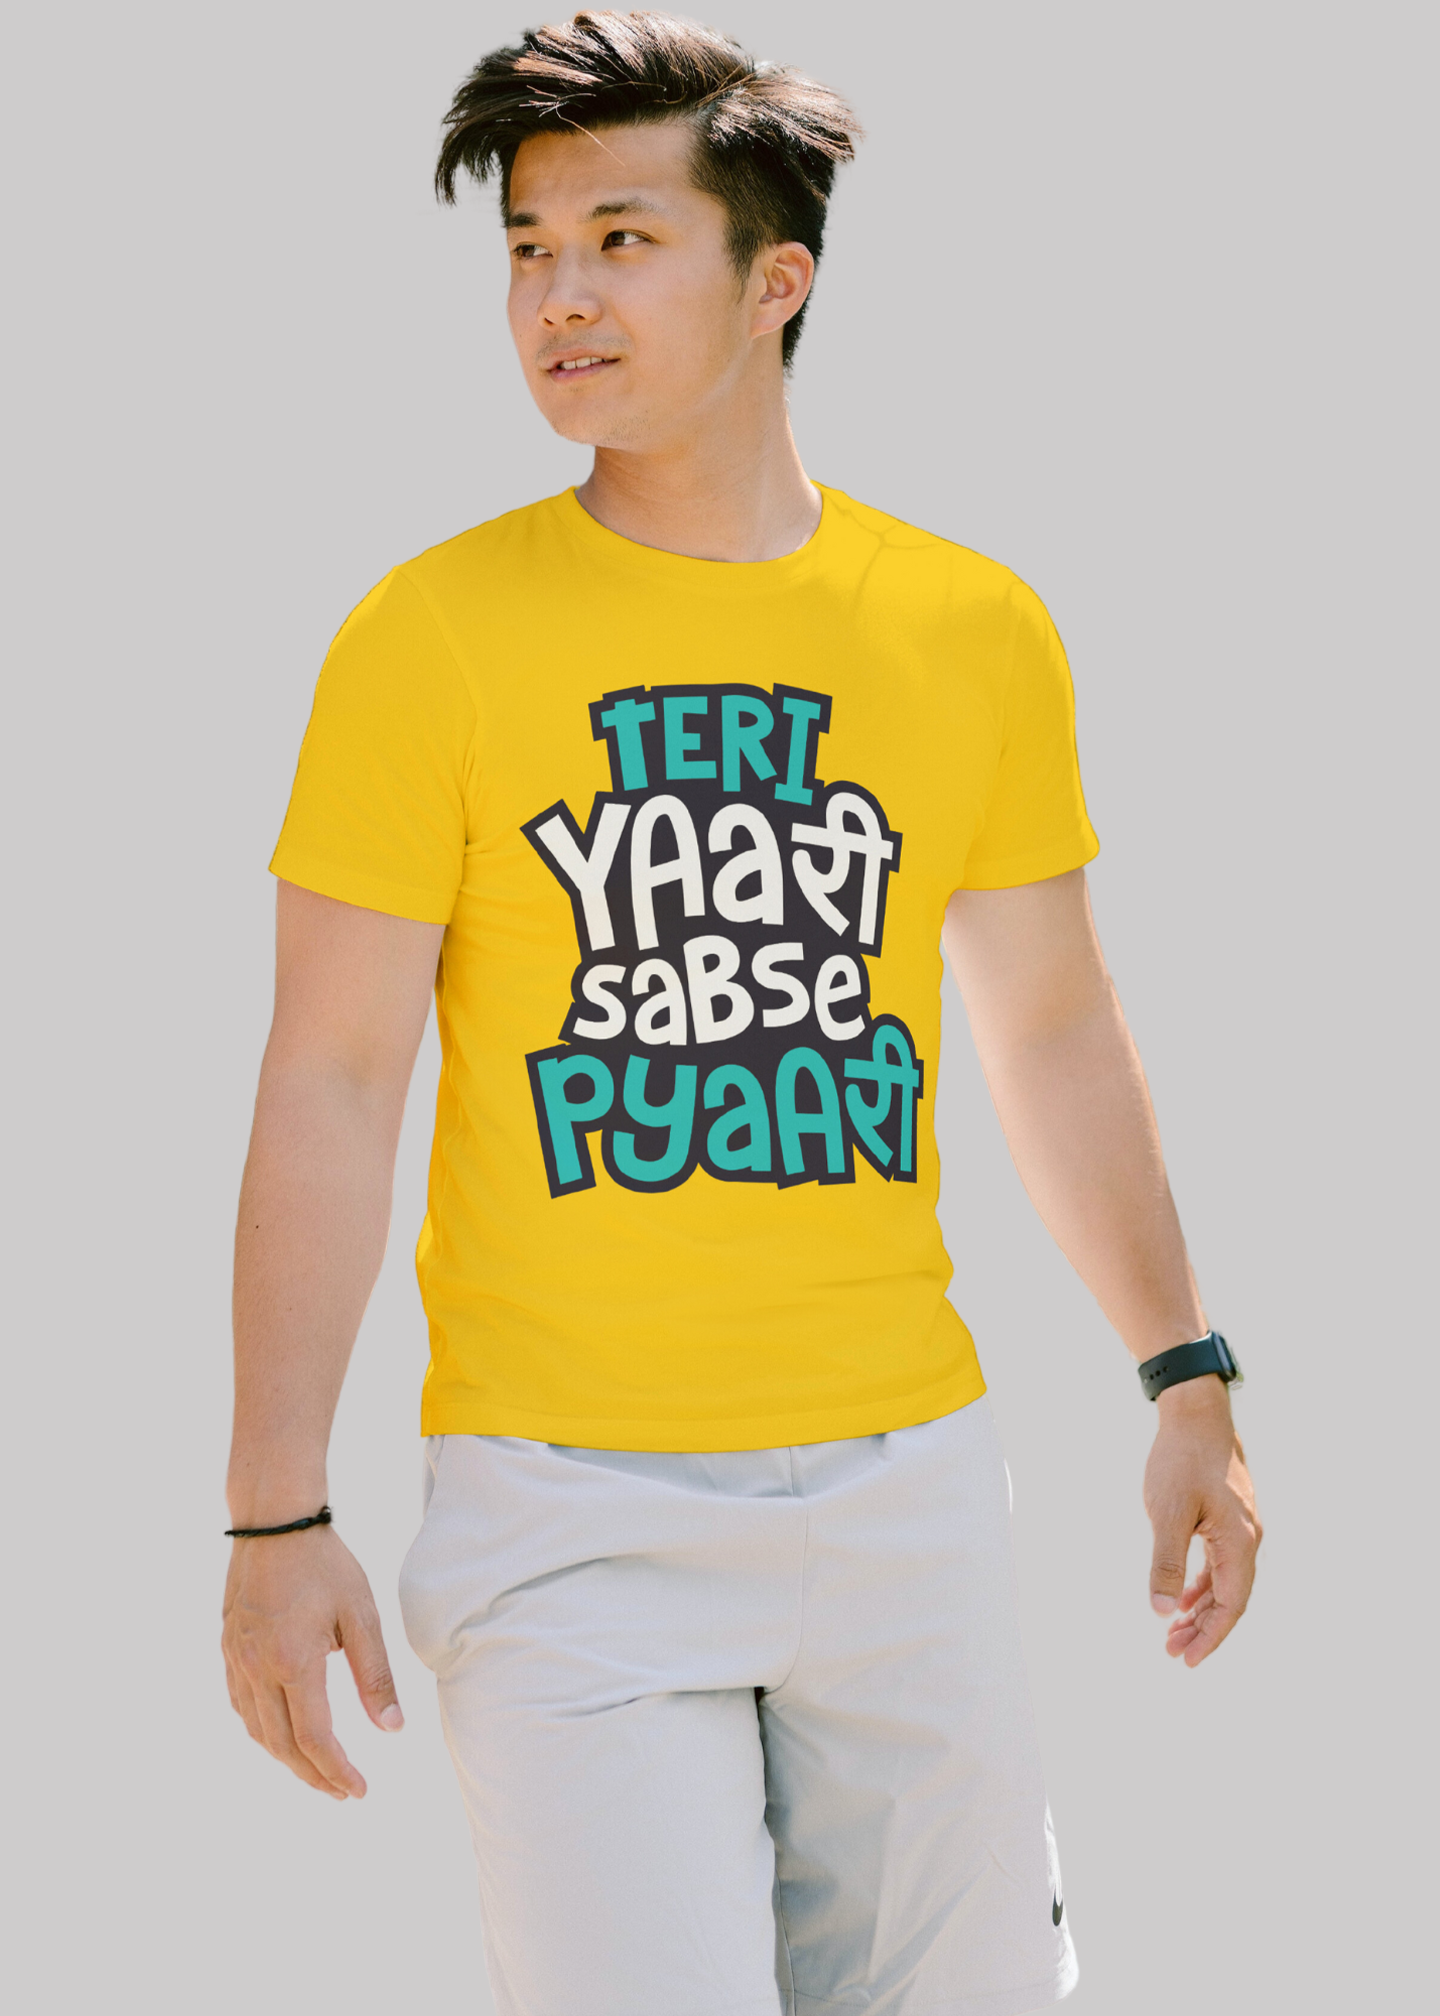 Teri yarri sabse pyari Printed Half Sleeve Premium Cotton T-shirt For Men